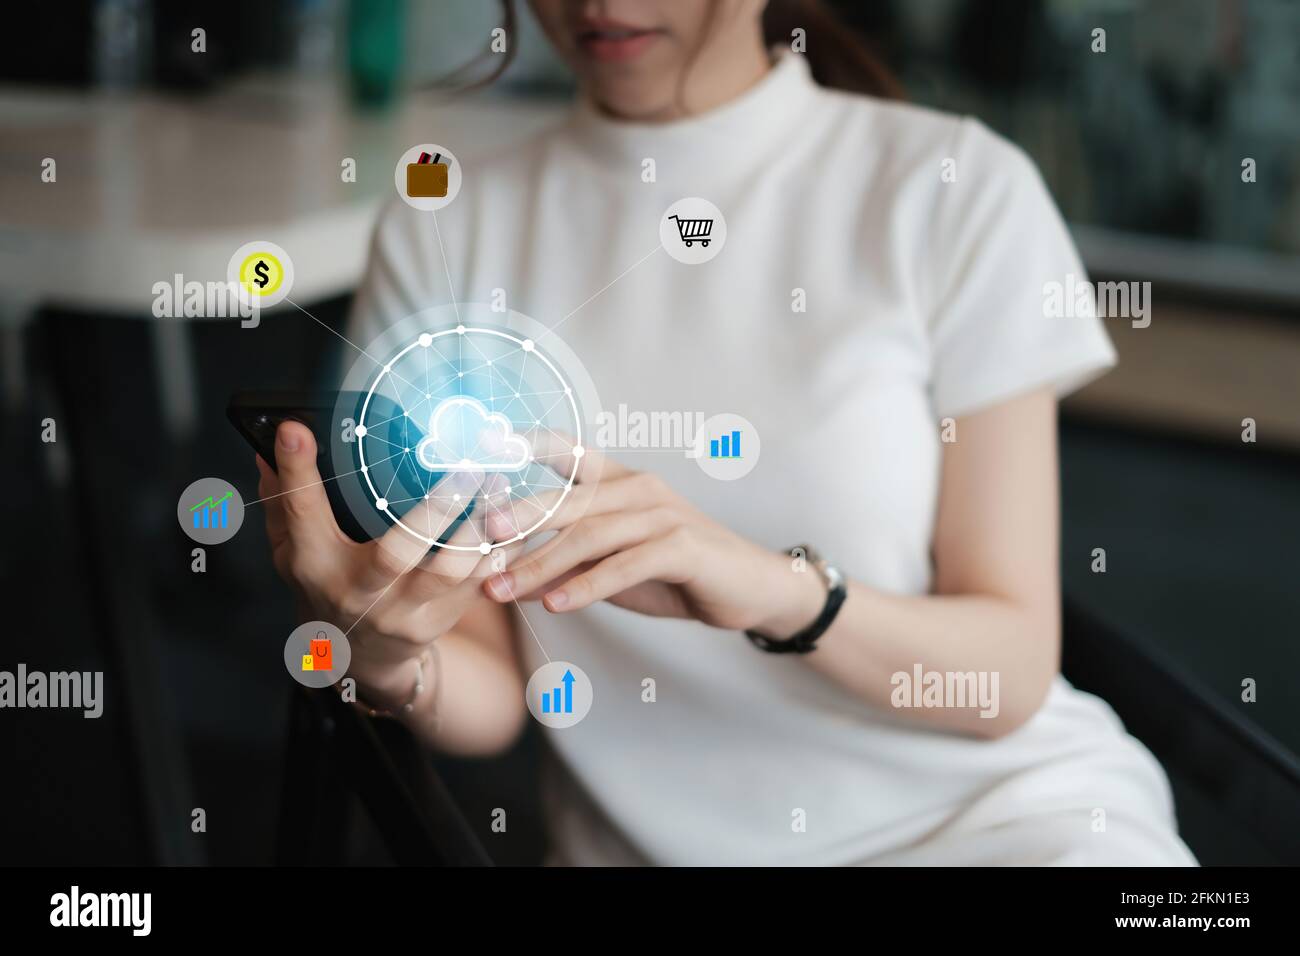 Femme utilisant un smartphone avec un réseau de cyber-sécurité icon Graphic Cloud des appareils connectés et la sécurité des données personnelles. Banque D'Images